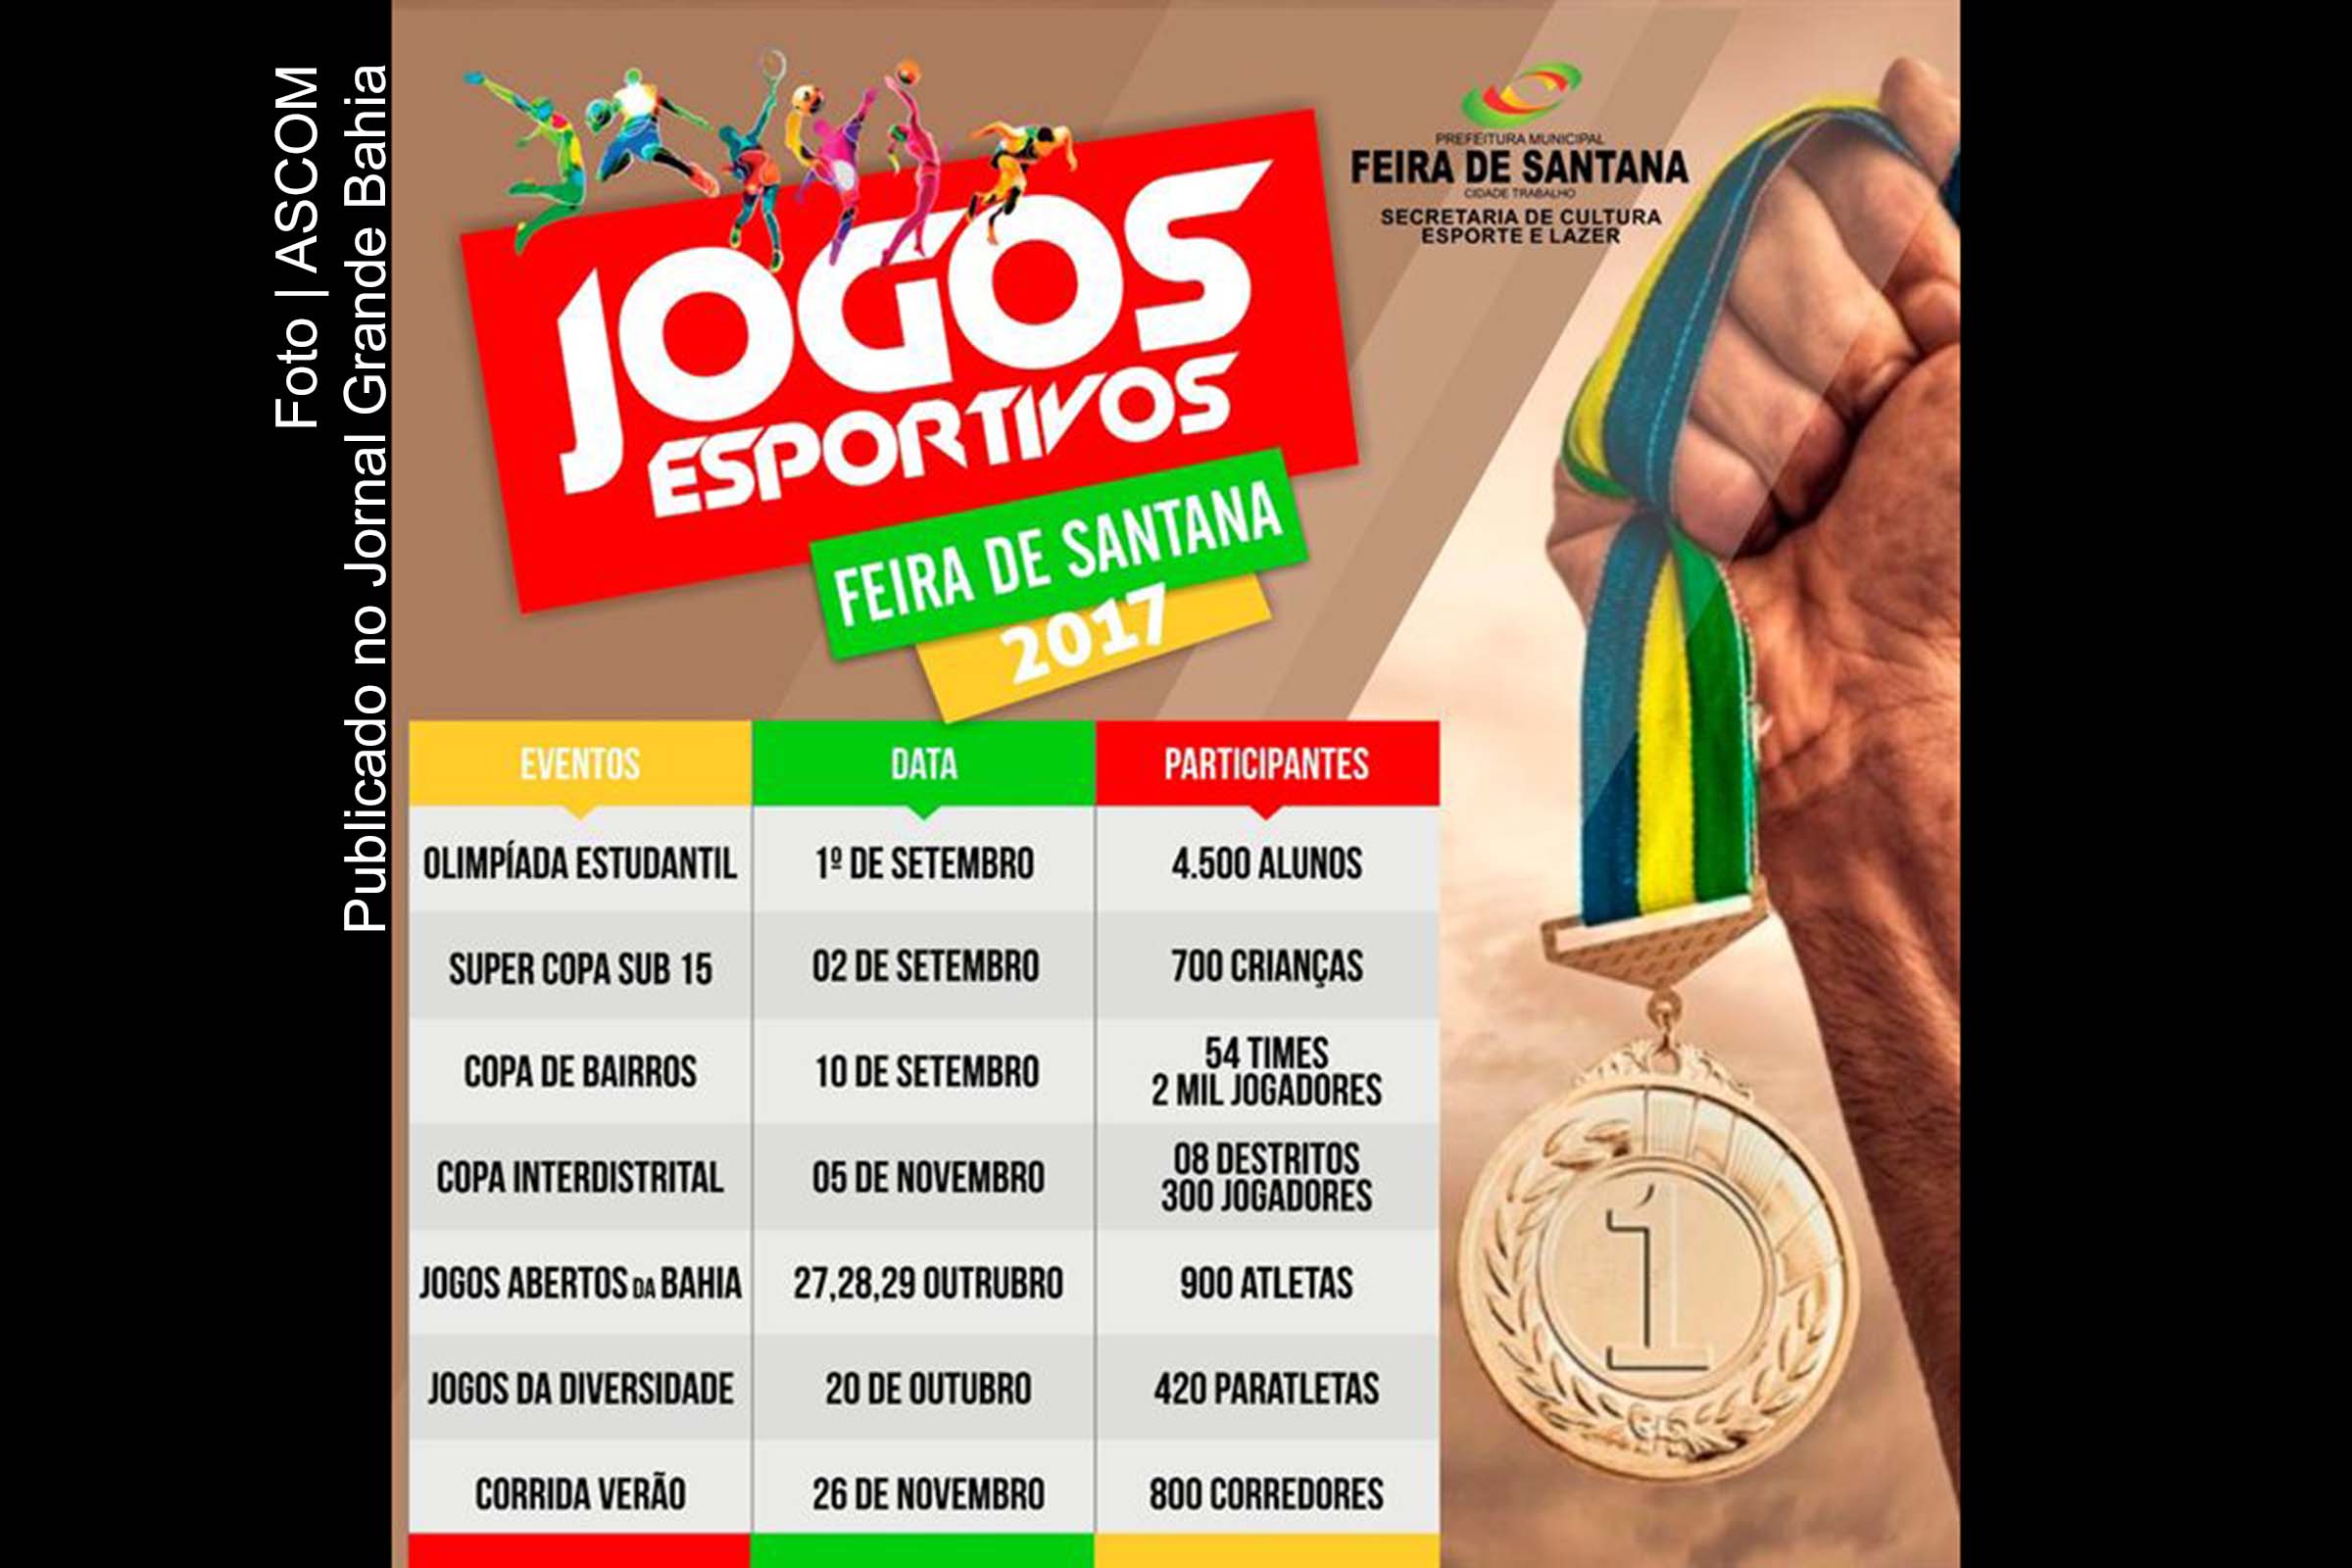 Cartaz anuncia Jogos Esportivos 2017 de Feira de Santana.